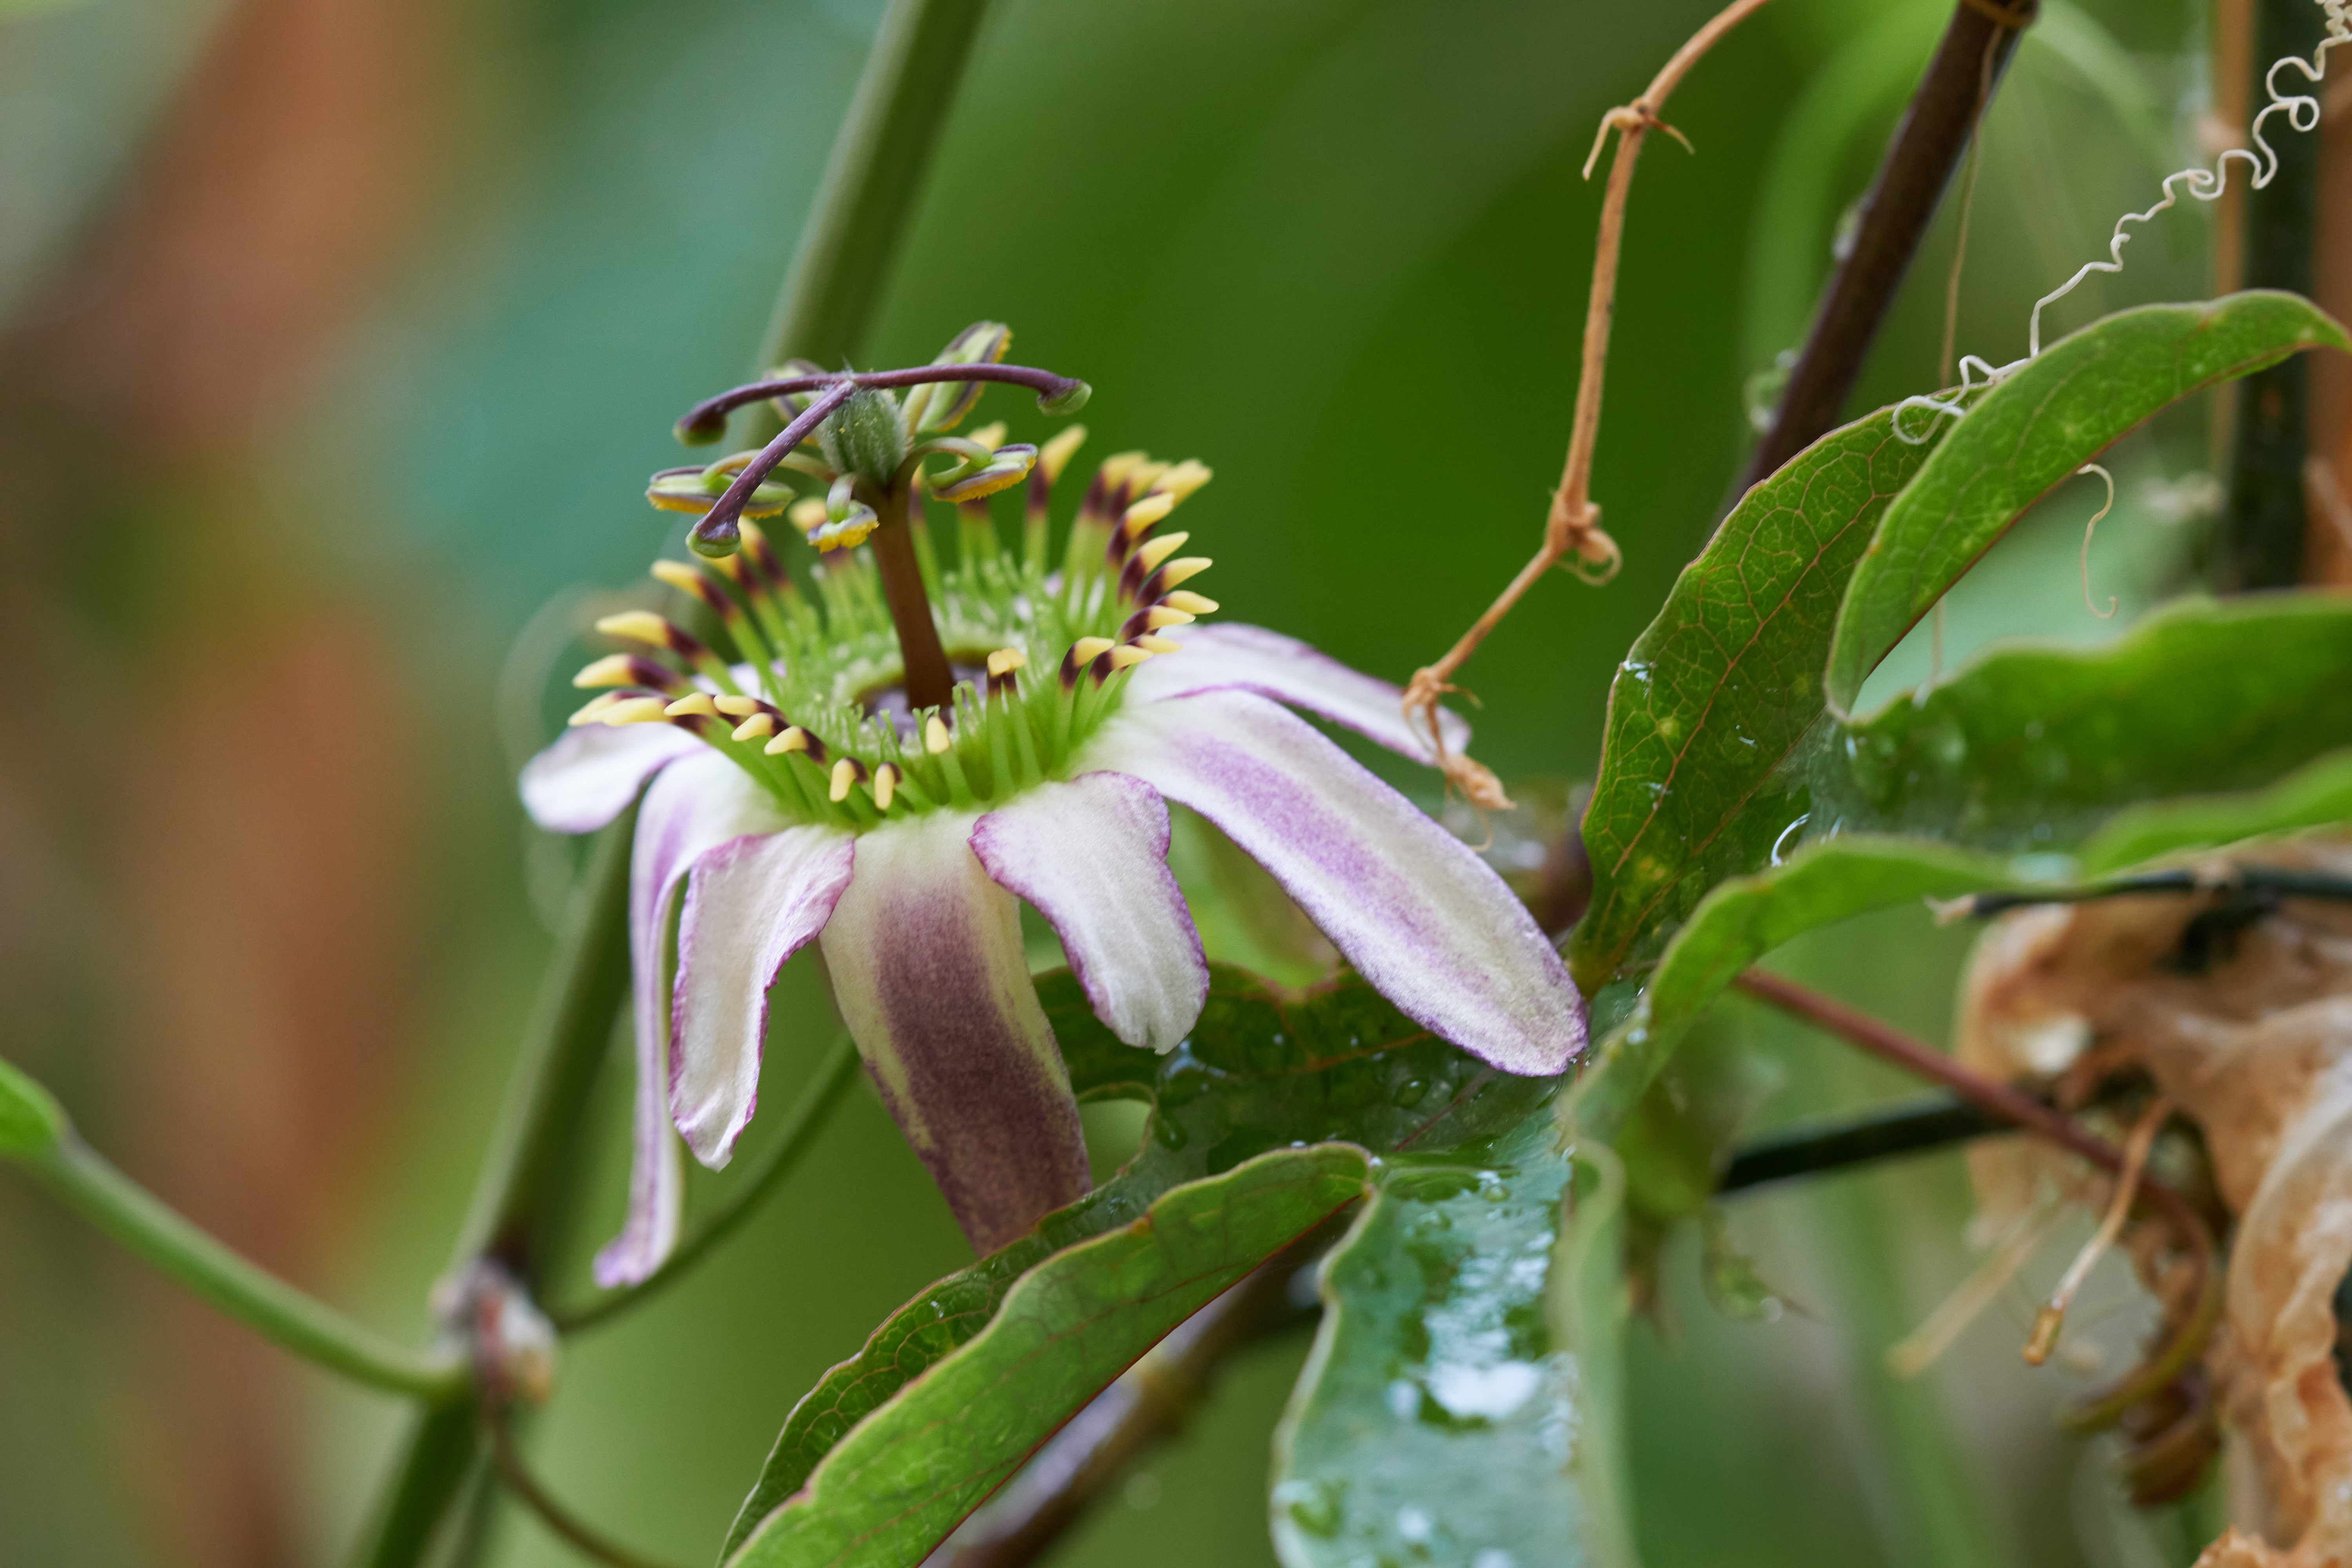 Passiflora cuneata